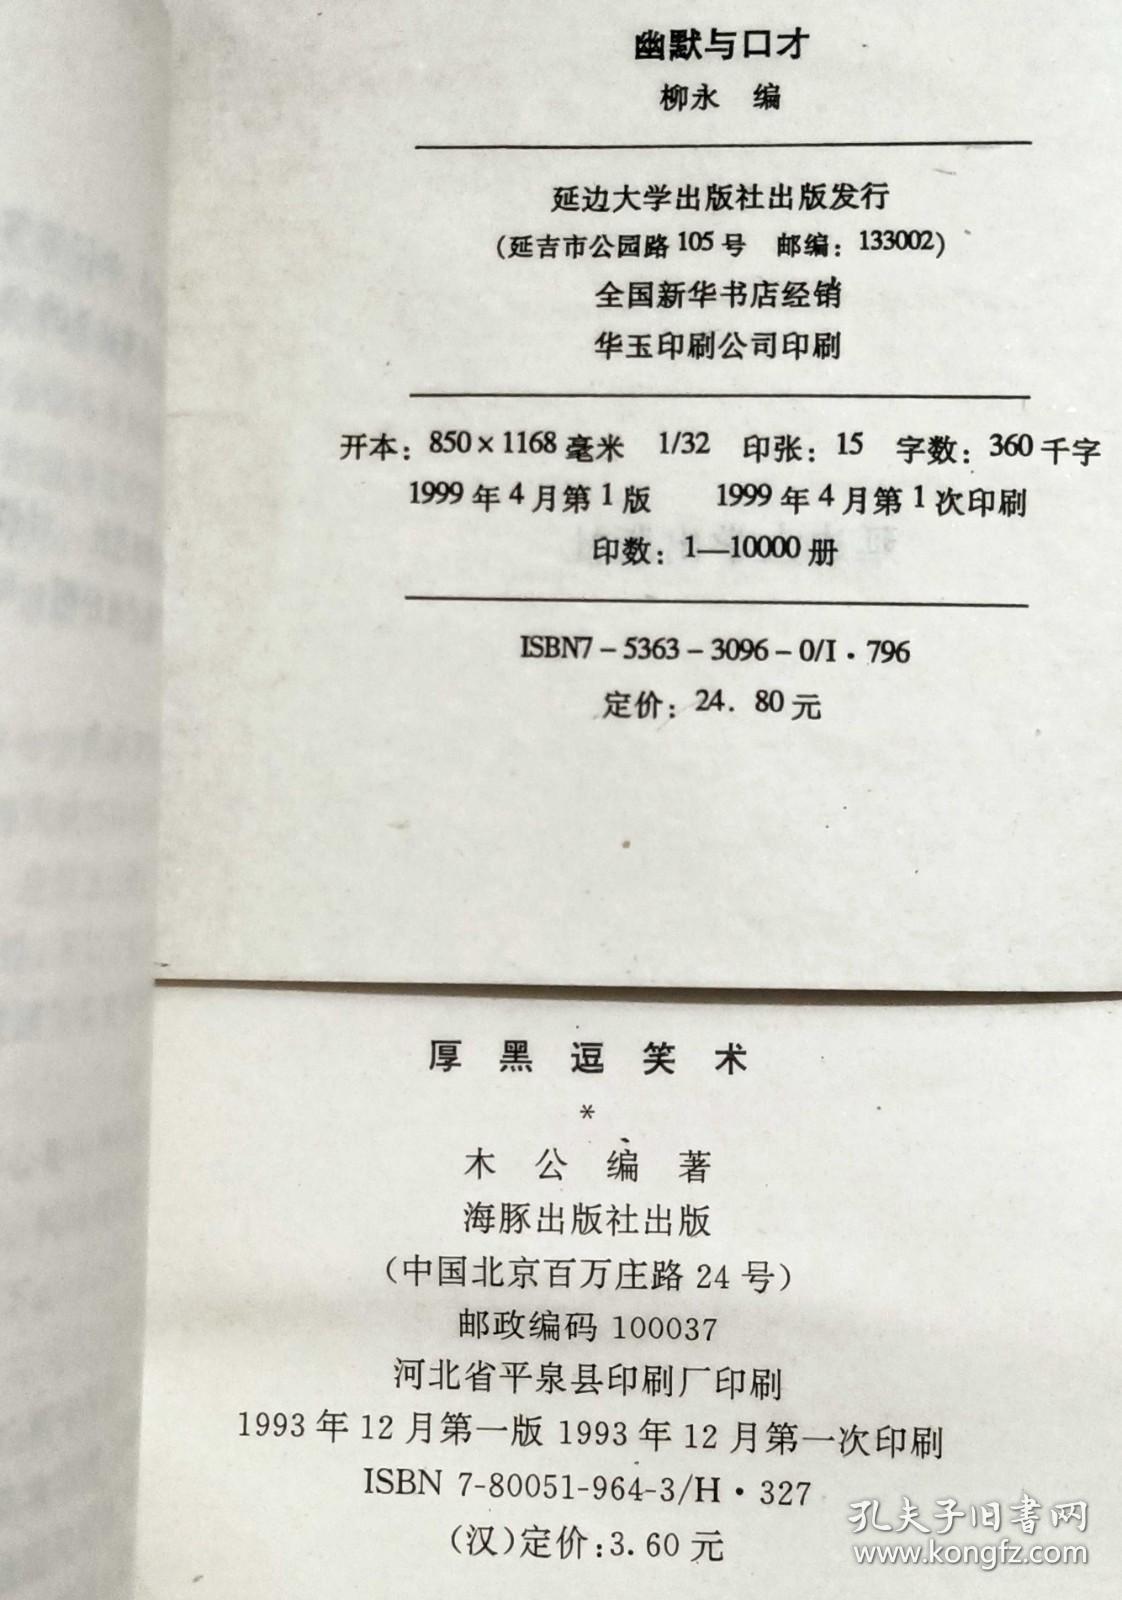 《口才语言类老版图书11本》（2003年的1本，其它的是80年代、90年代出版的，海豚出版社、延边大学出版社、中国民间文艺出版社、知识出版社、解放军出版社、民族出版社等等出版）.。